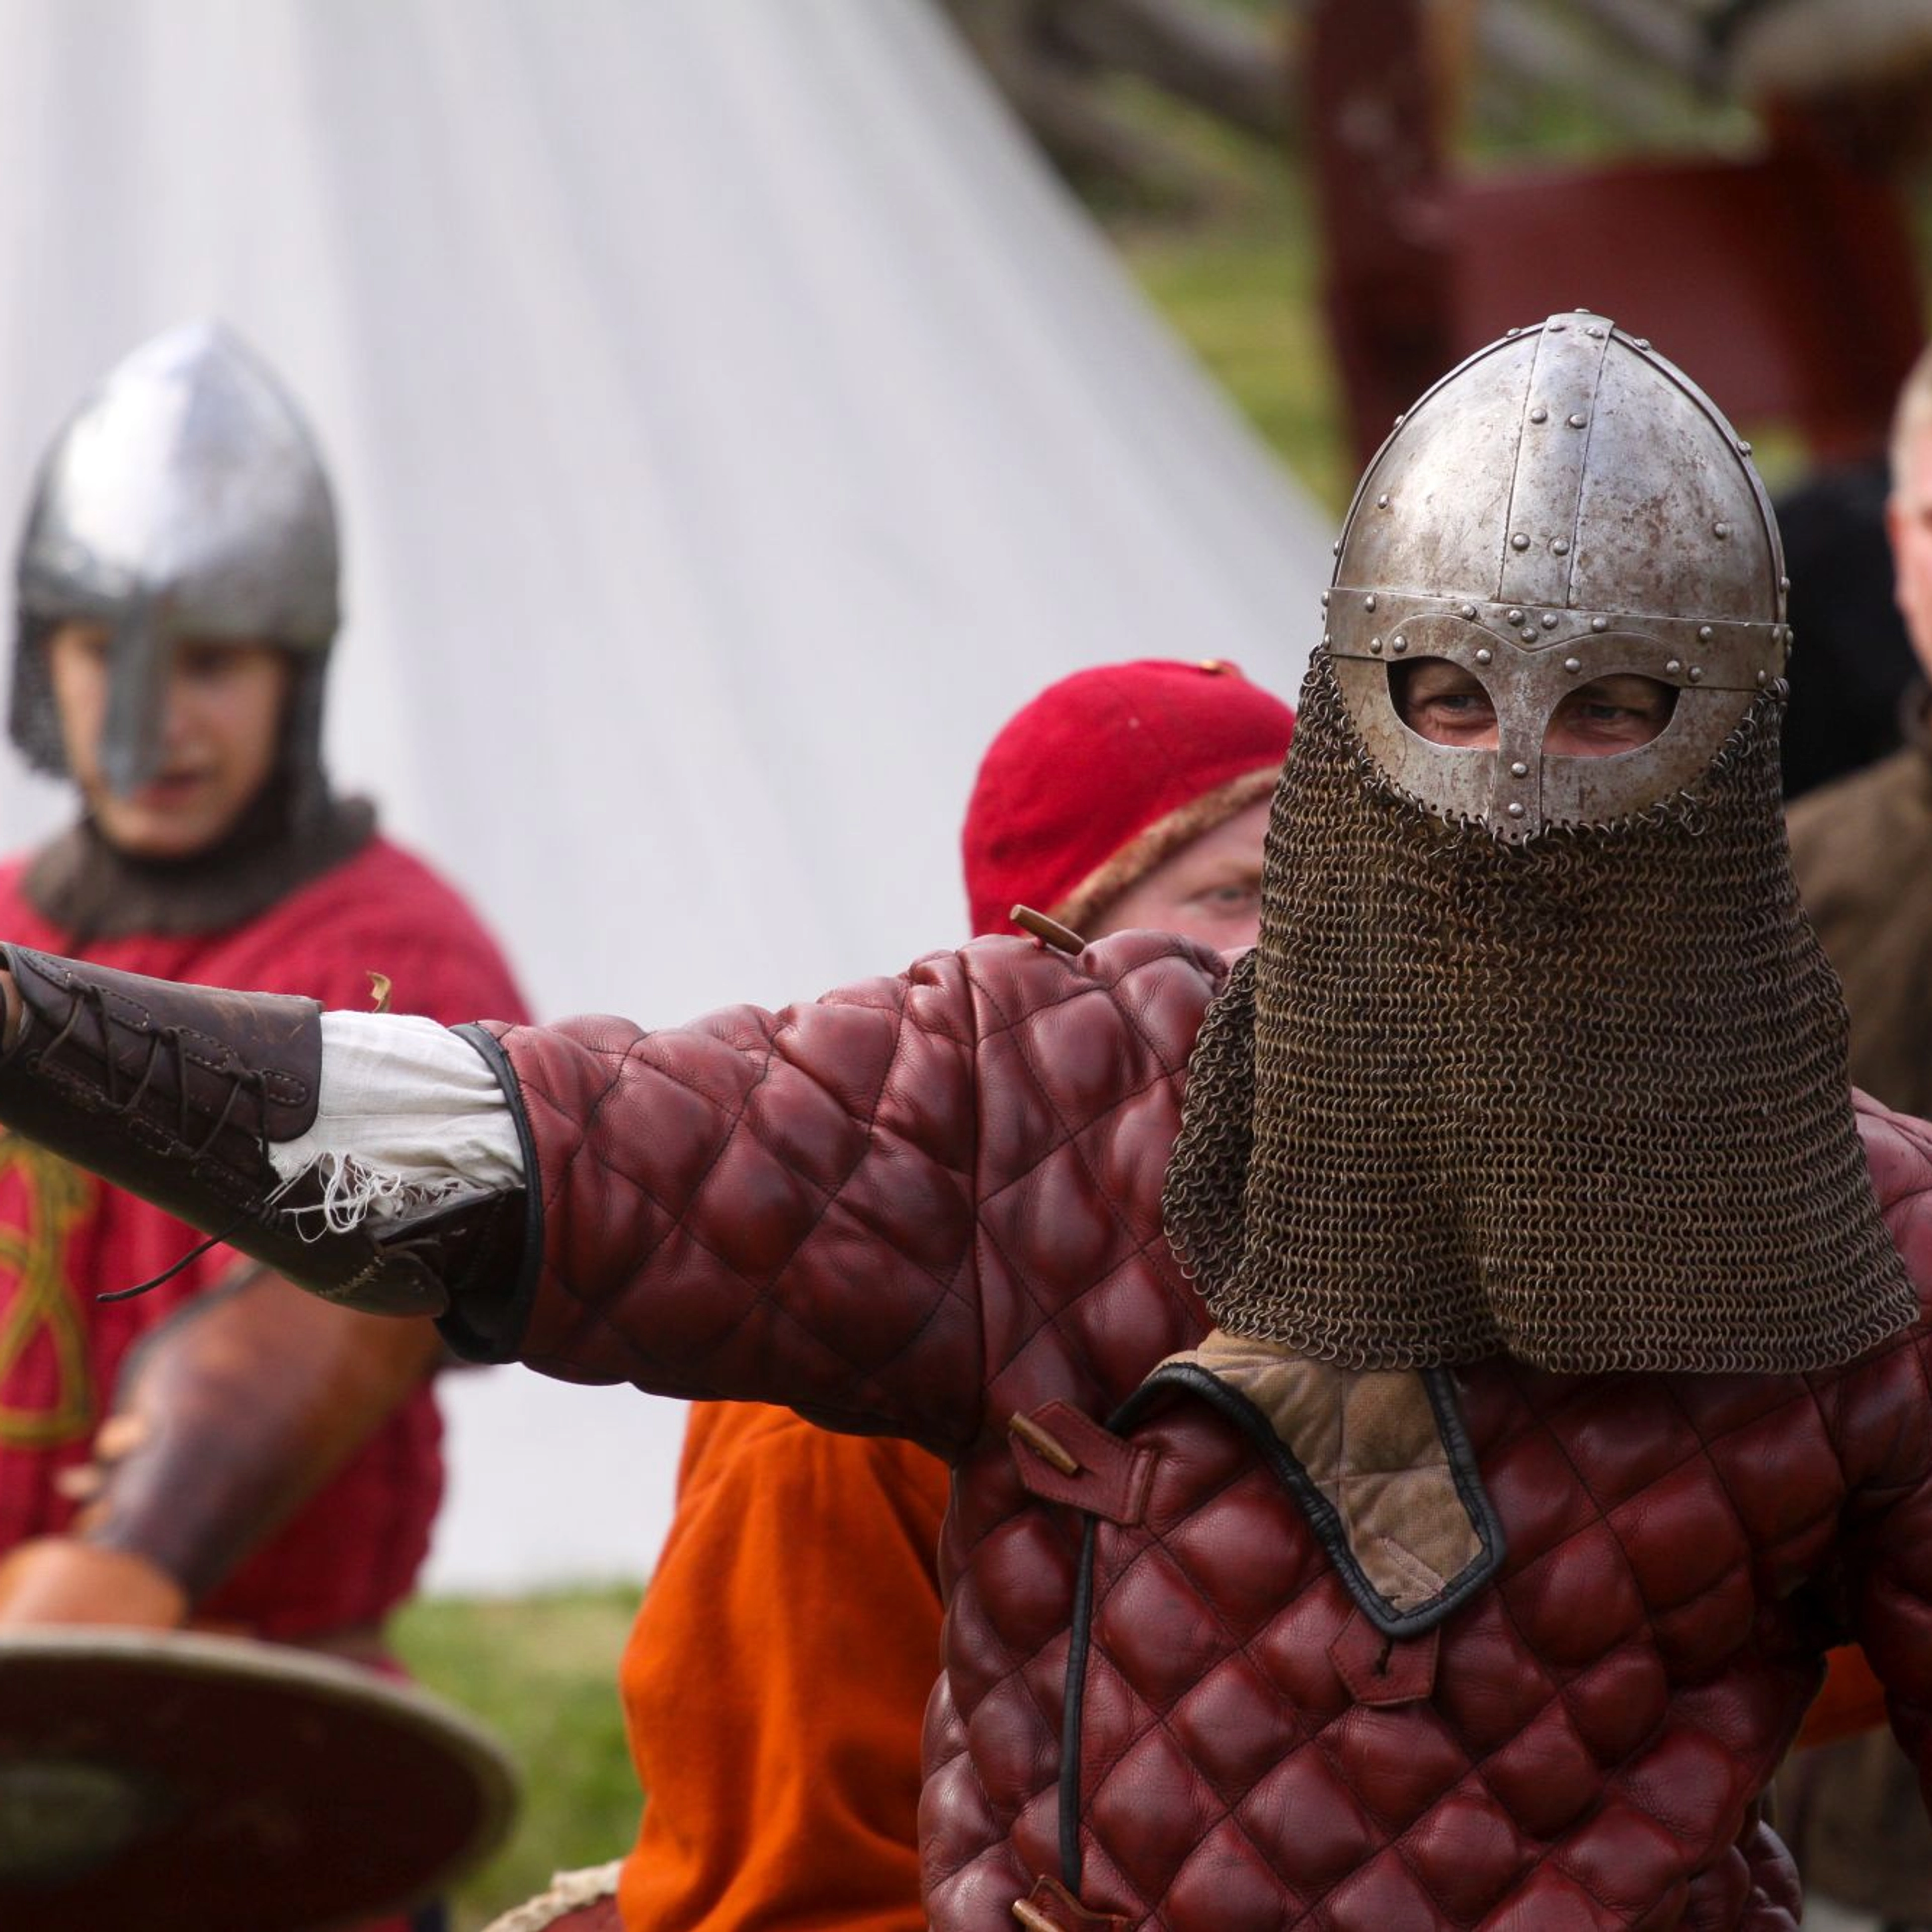 Viking battle gear